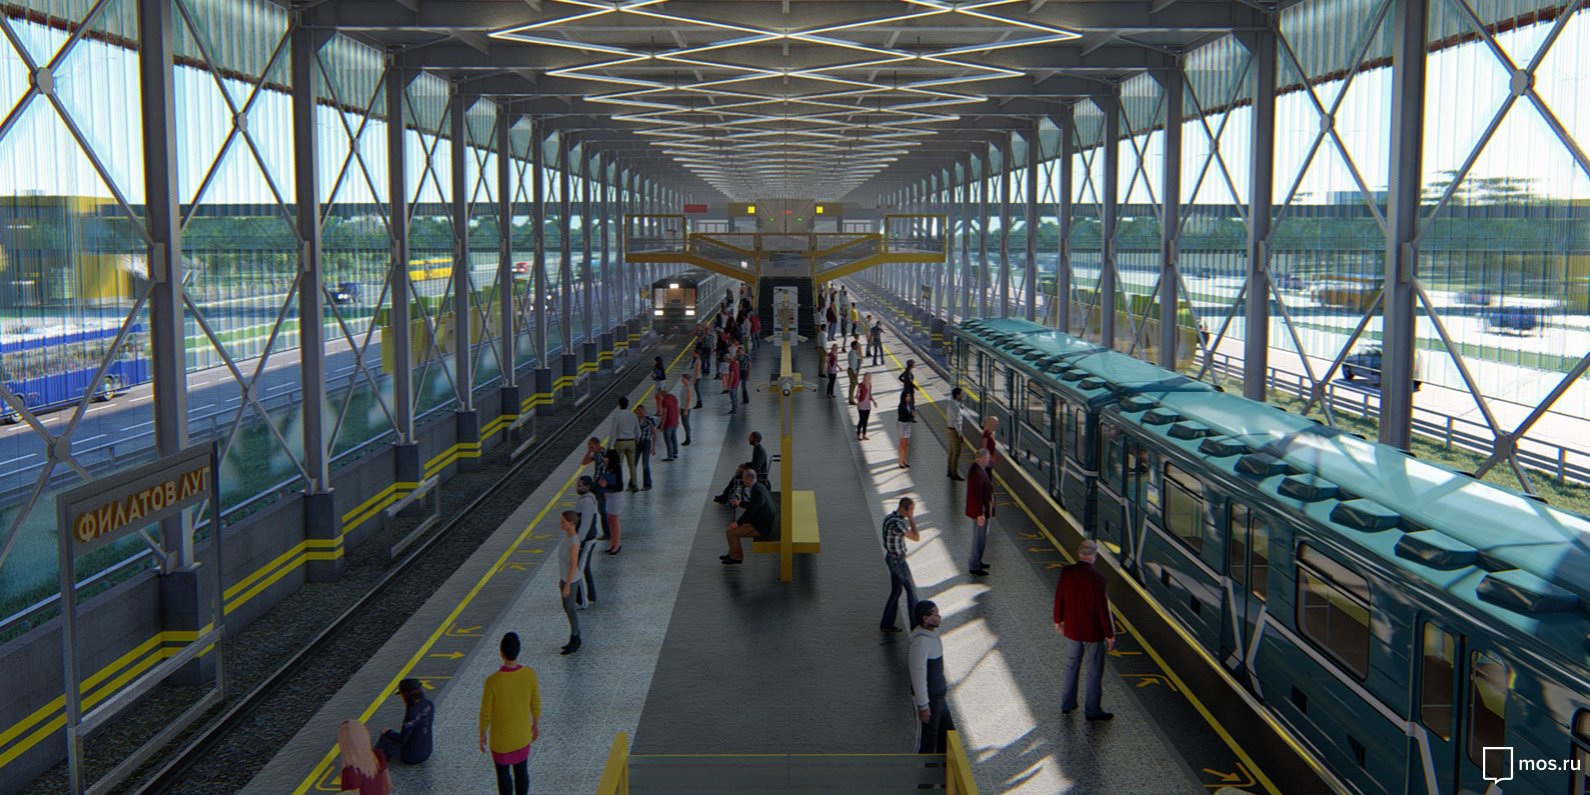 Около 20 станций метрополитена построят в Новой Москве к 2025 году